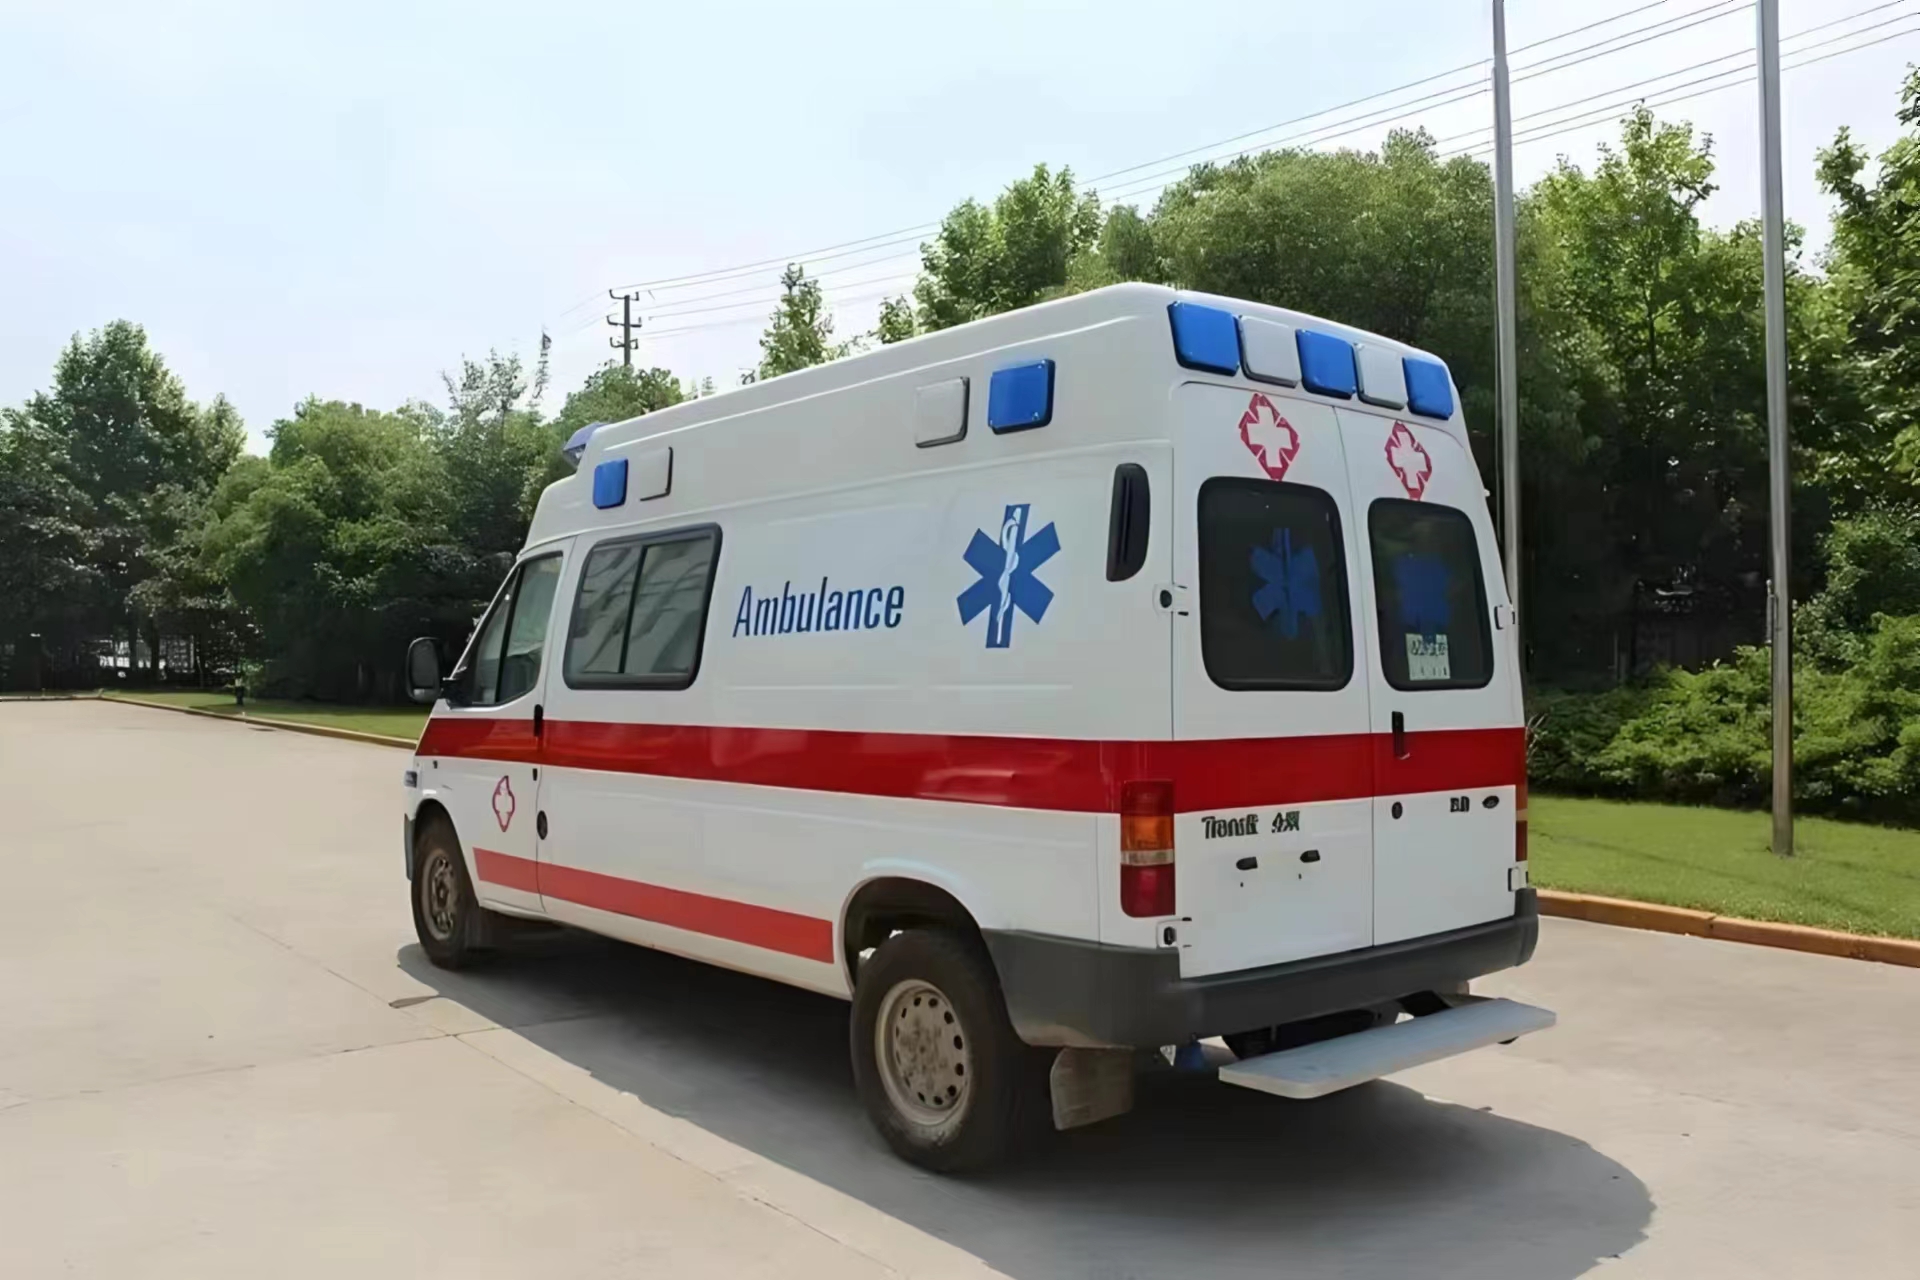 克孜勒苏120救护车出院-私人救护车出租--救护服务中心